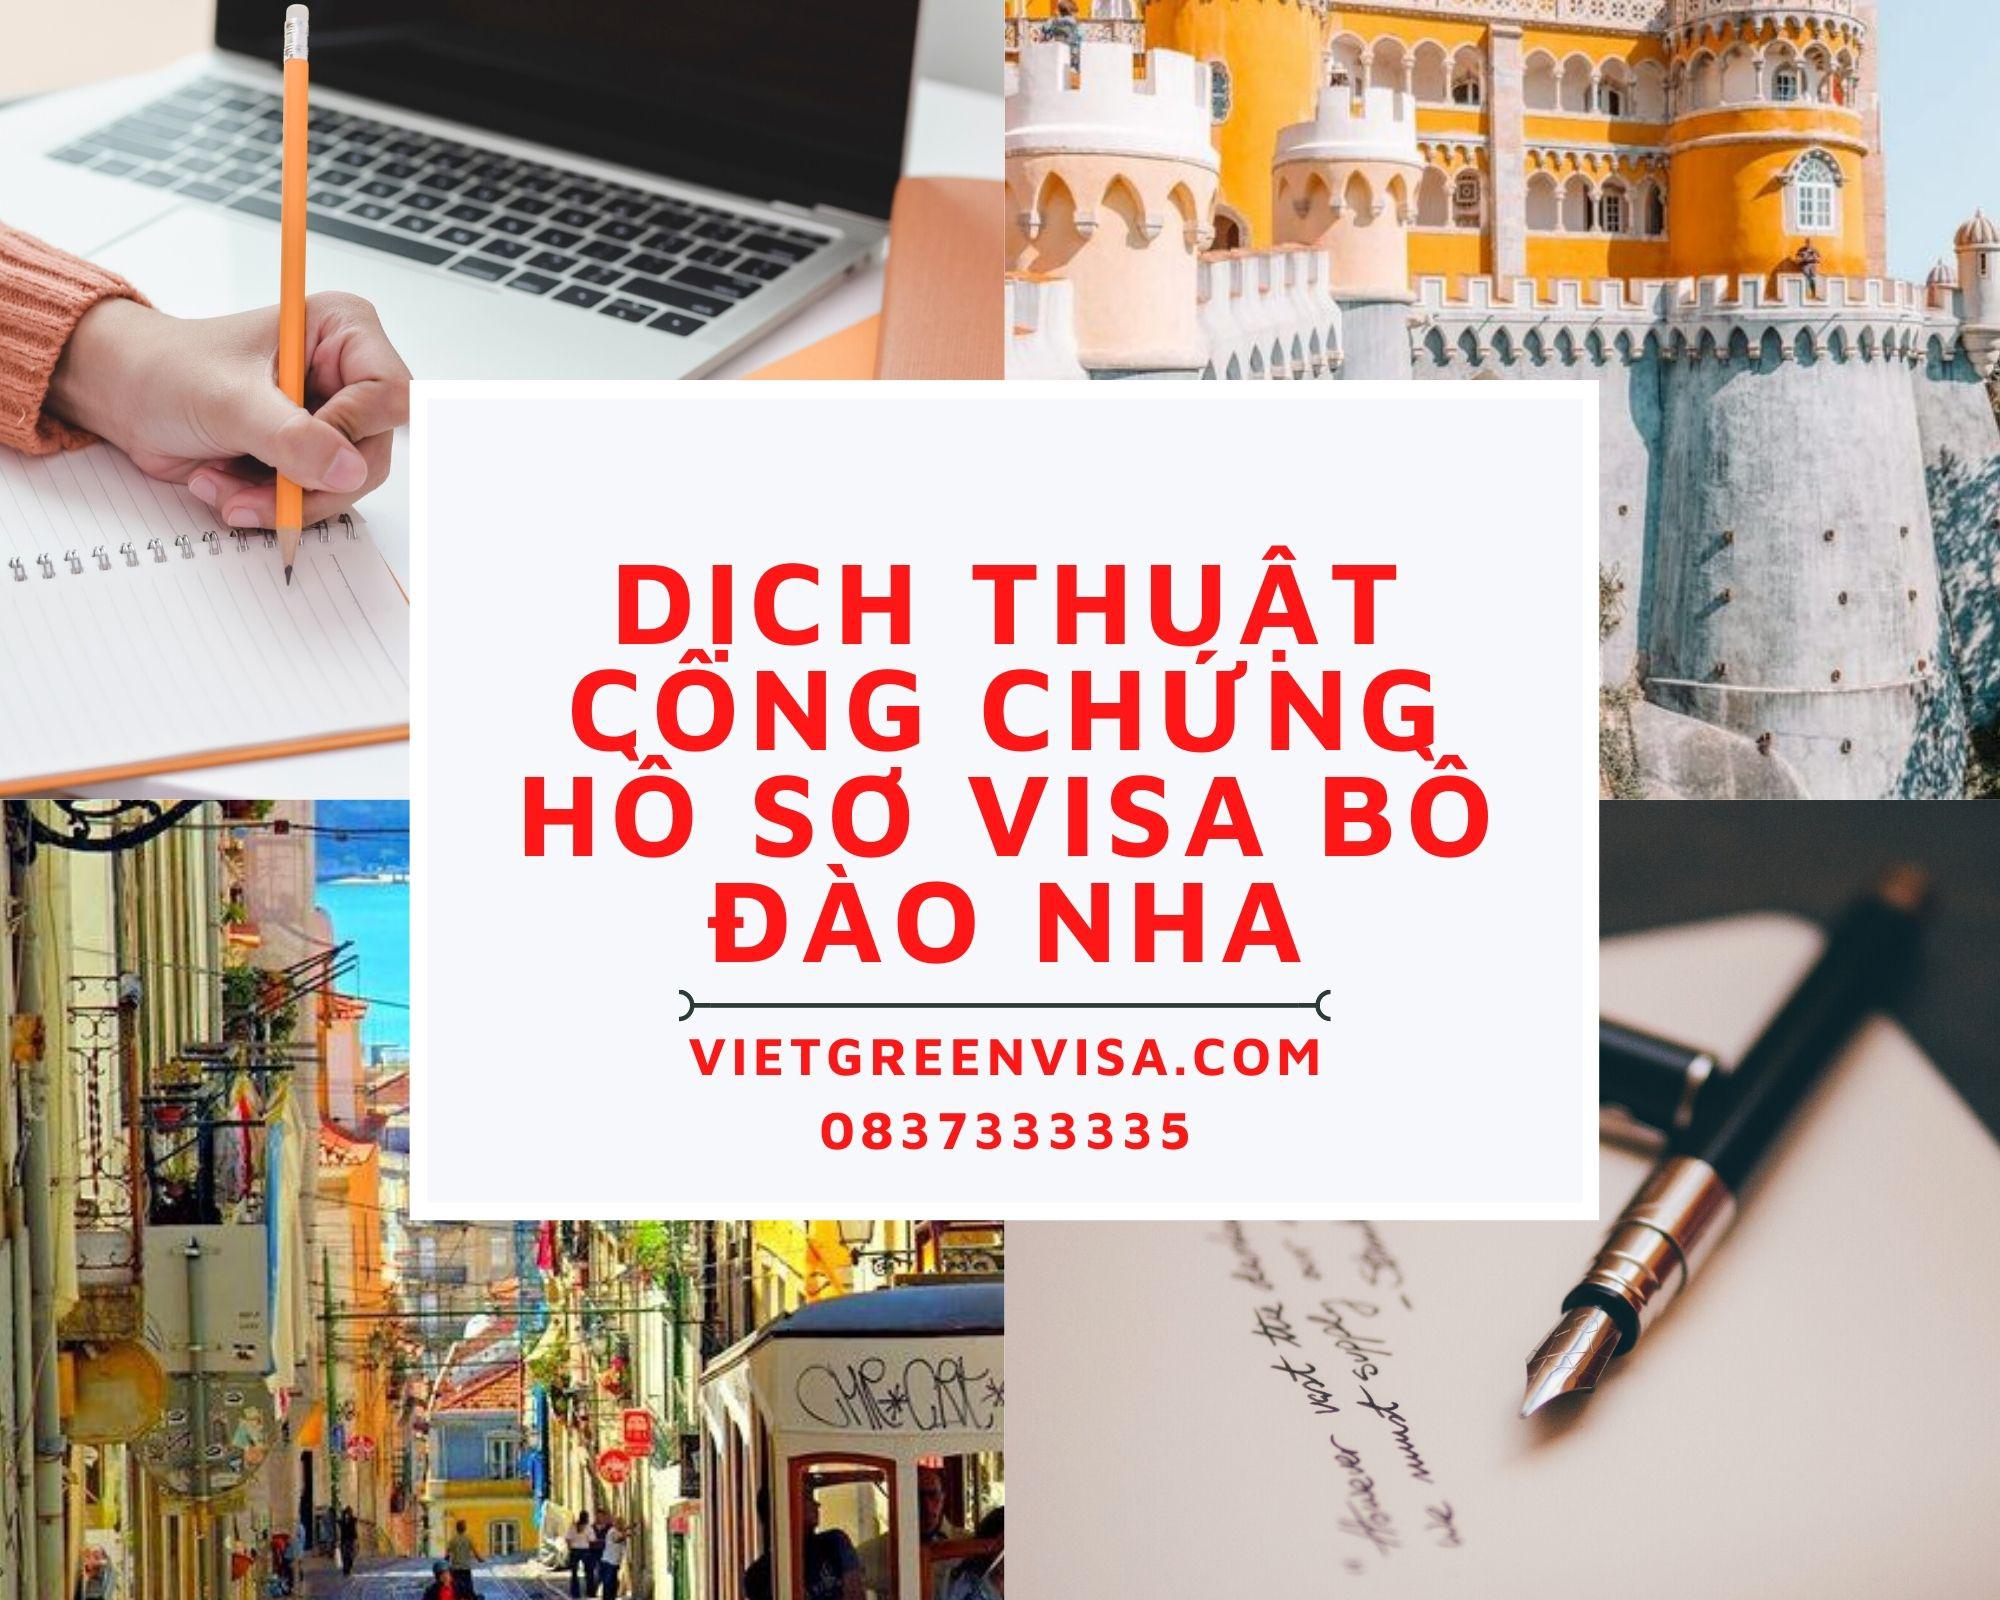 Dịch thuật công chứng hồ sơ visa du lịch, du học Bồ Đào Nha nhanh rẻ